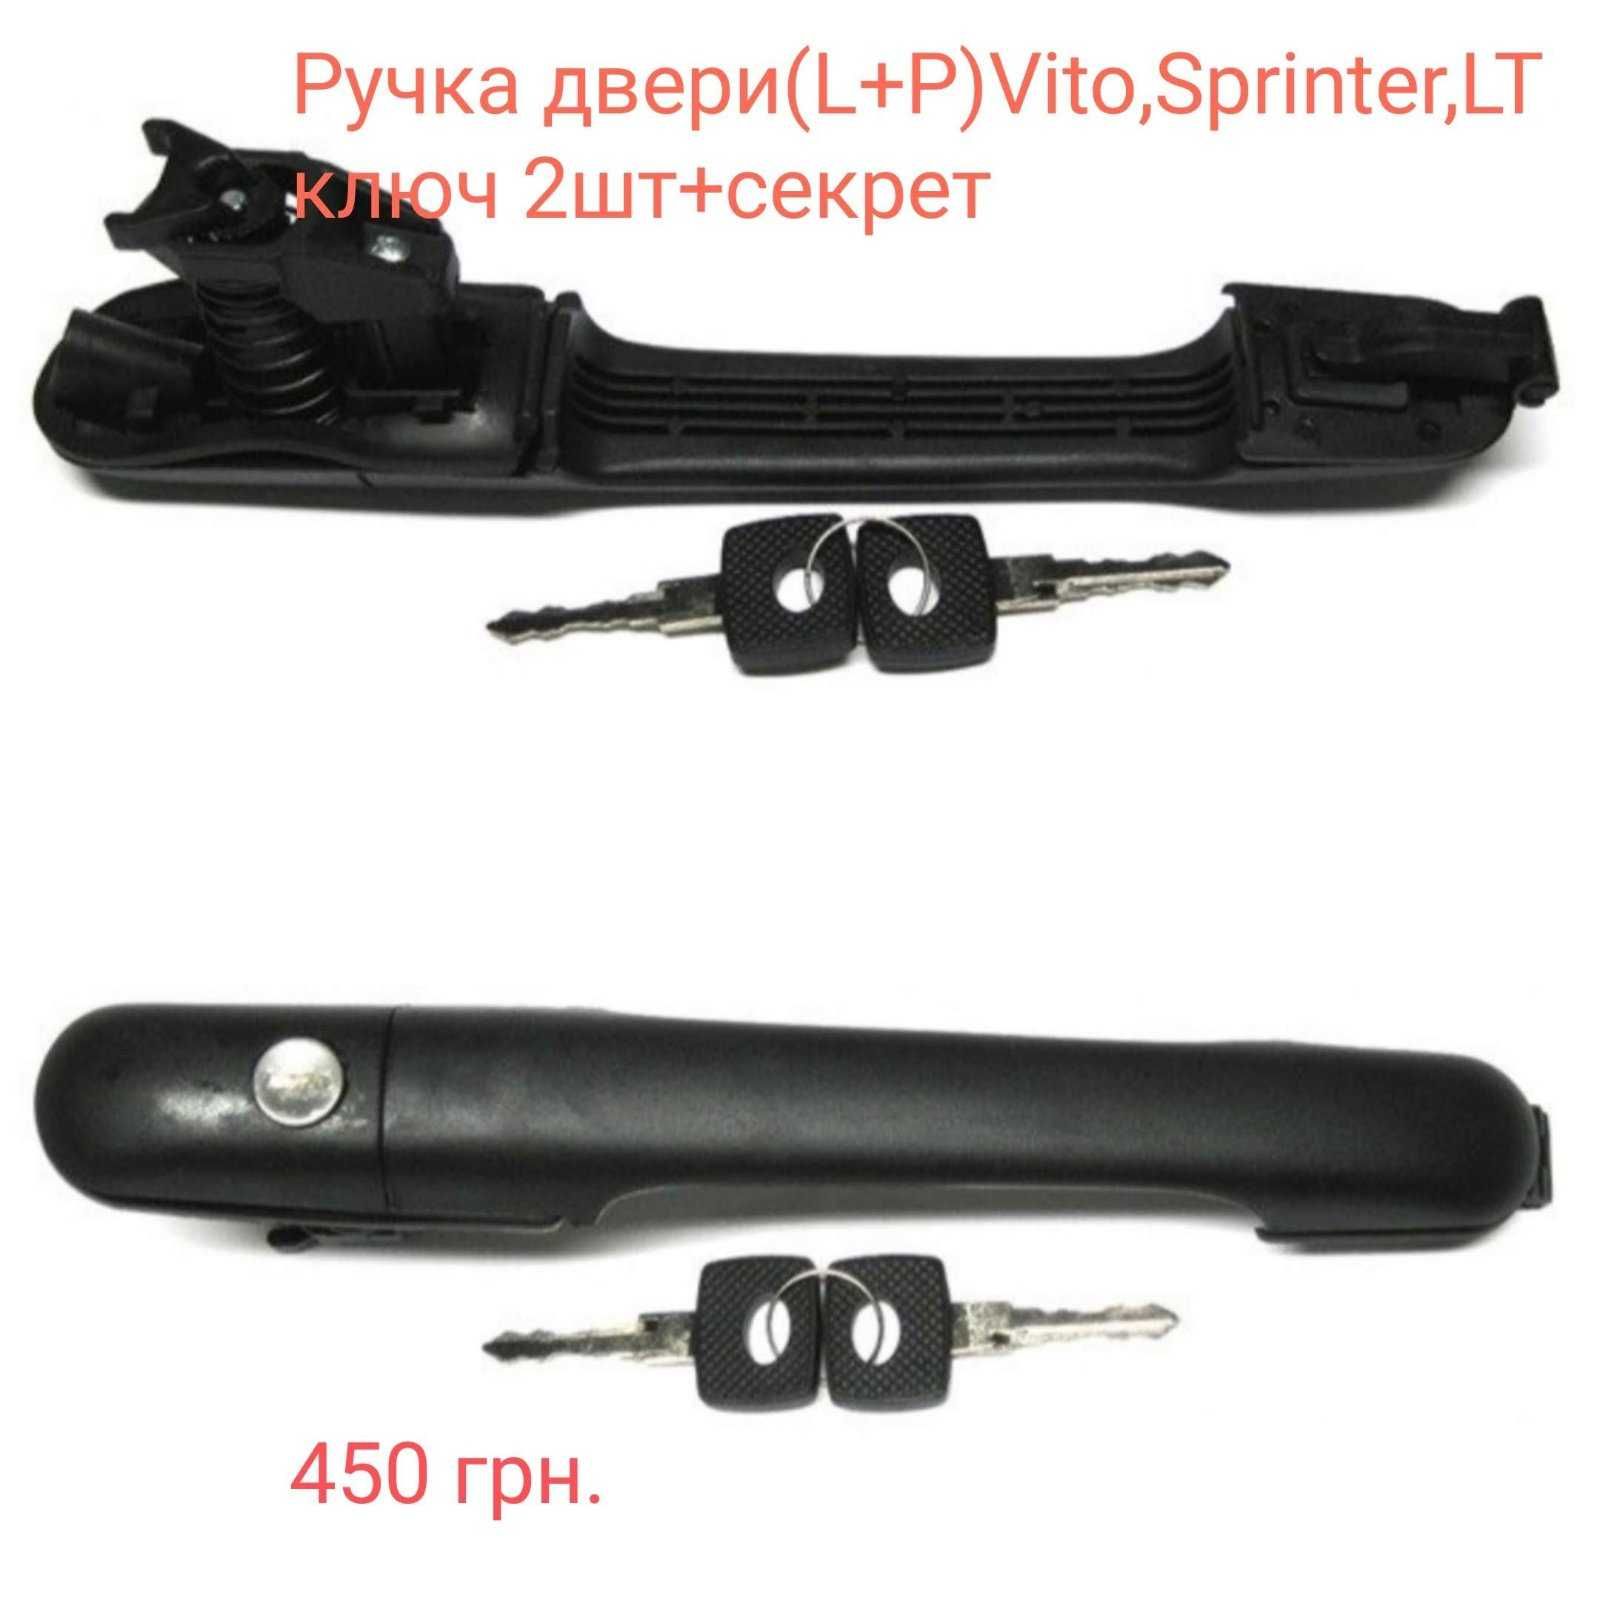 Наружная ручка двери(L,P,Bok) Vito, Sprinter,VW LT 95-06г.в